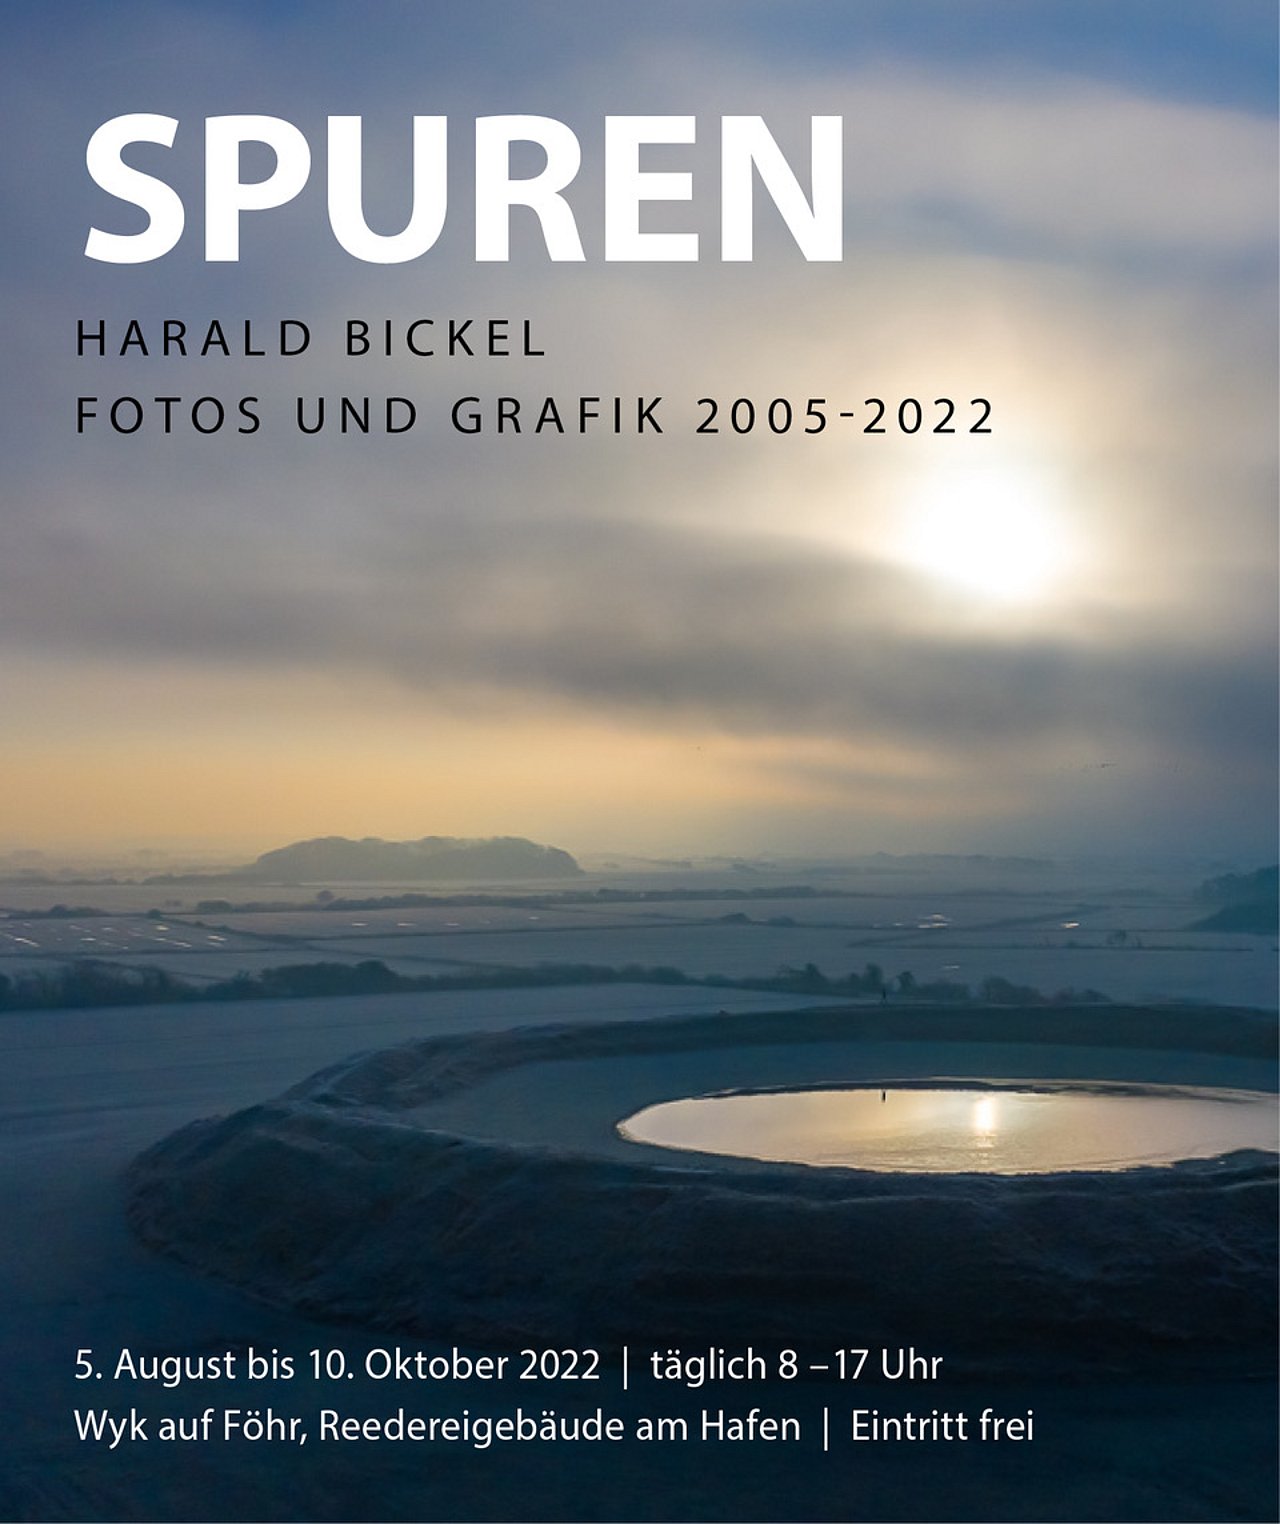 "Spuren" 05.08. bis 10.10.2022 – Harald Bickel – Fotos und Grafik 2005-2022